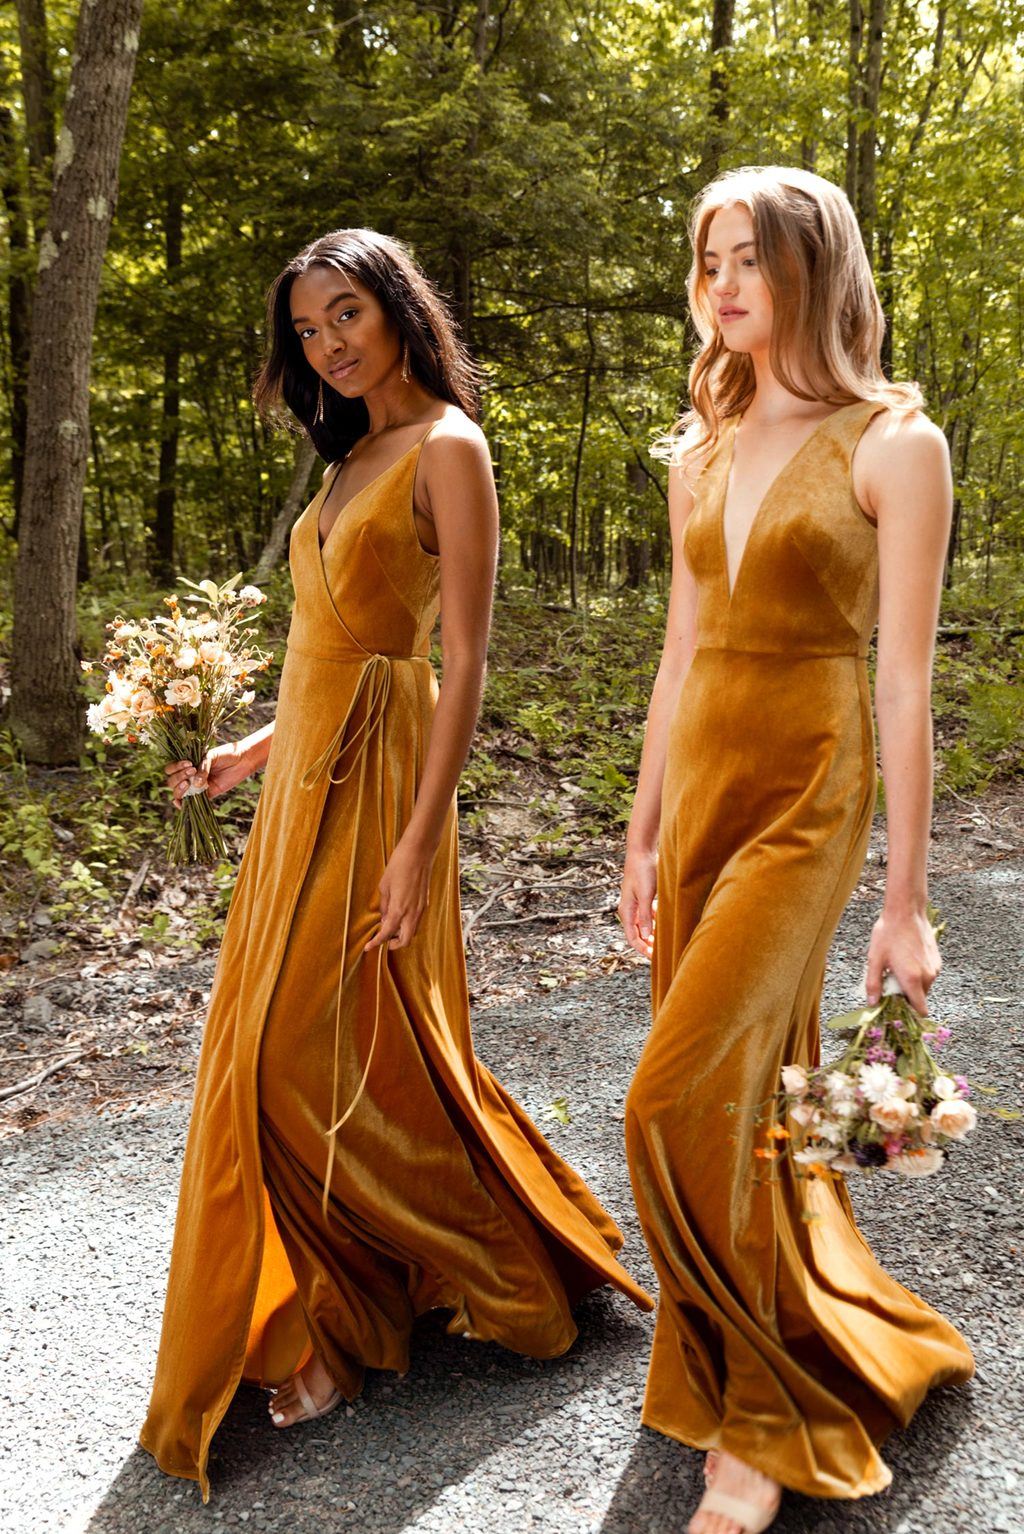 marigold bridesmaid dress